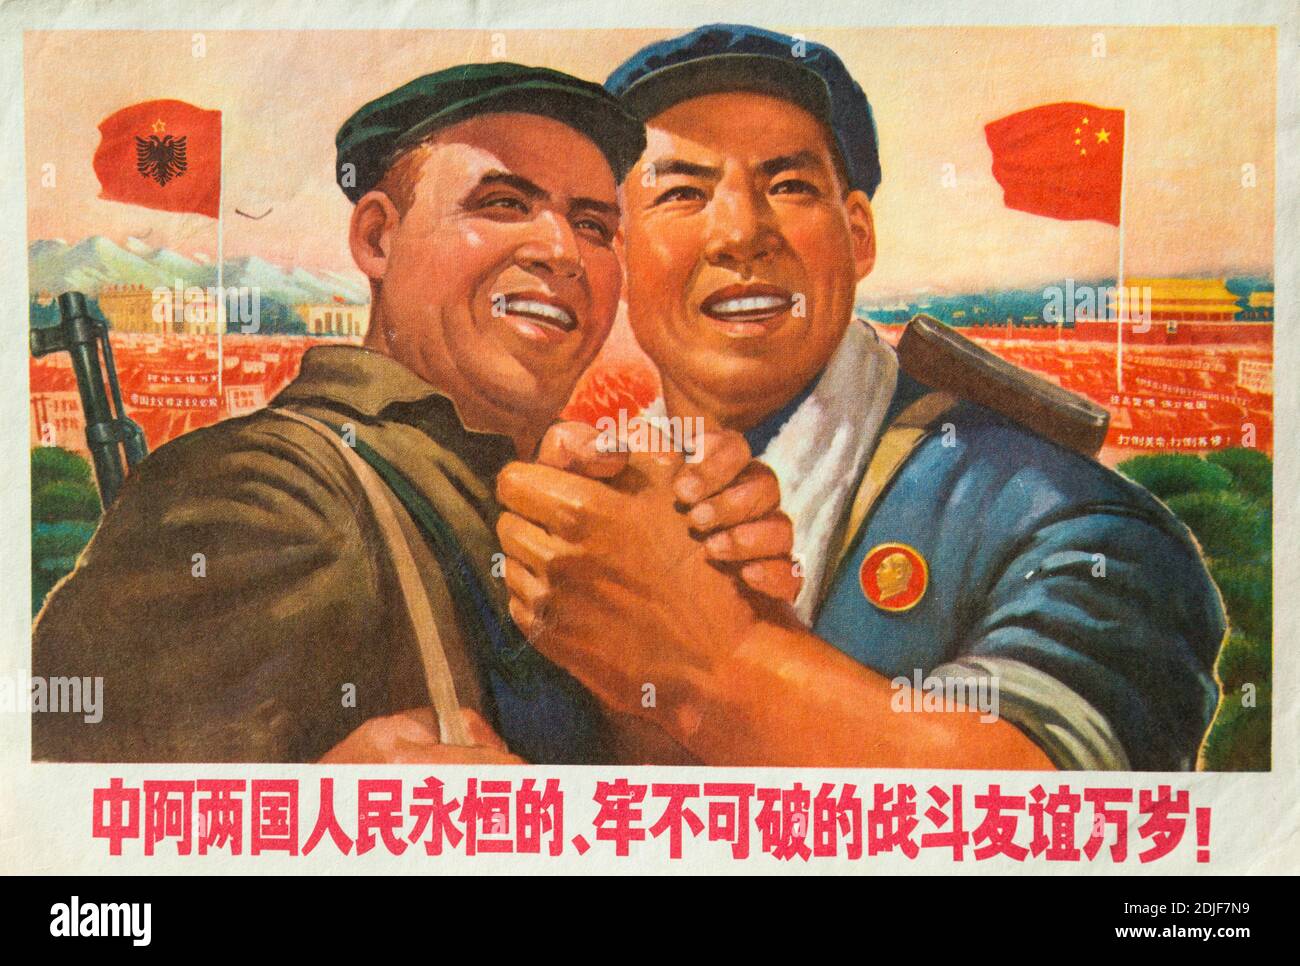 Une véritable affiche de propagande pendant la Révolution culturelle en Chine. Les personnages chinois lisent : vive le combat éternel et incassable f Banque D'Images